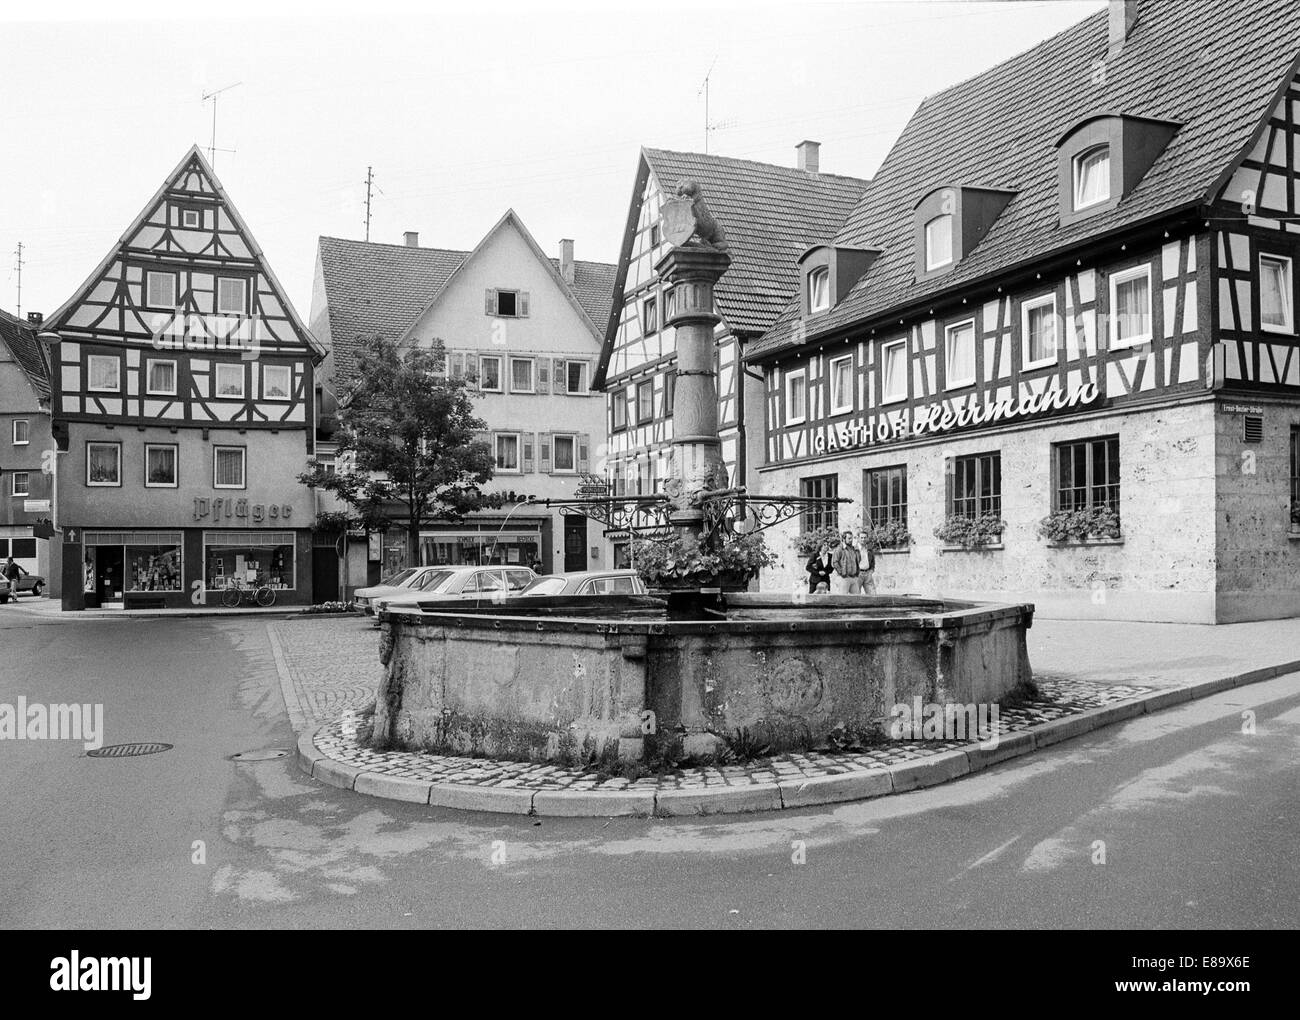 Achtziger Jahre, Marktbrunnen und Fachwerkhaeuser am Marktplatz von ...